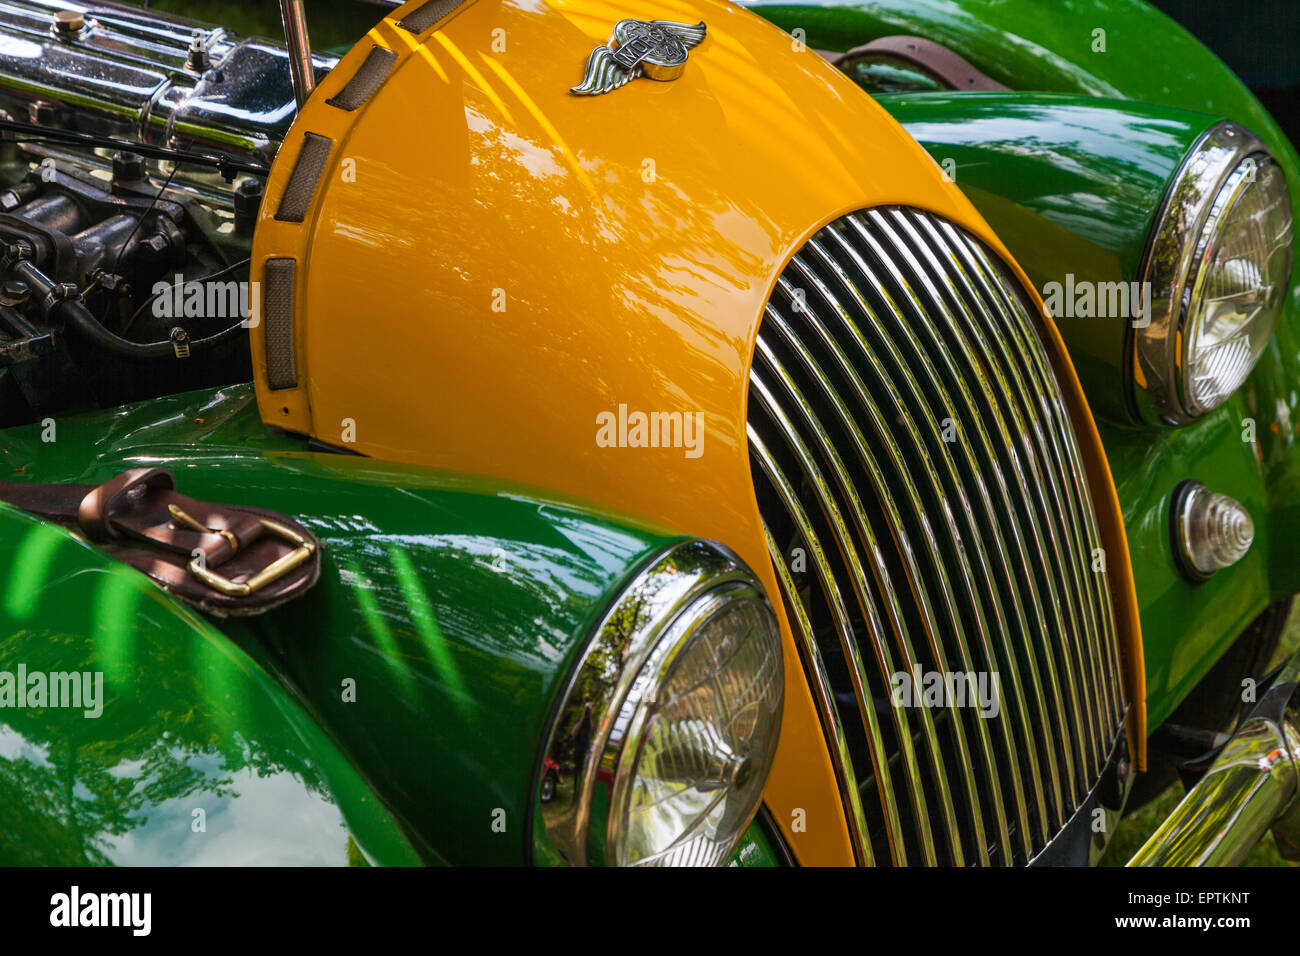 Immagine astratta di una Morgan 4 antico britannico vettura sportiva Foto Stock